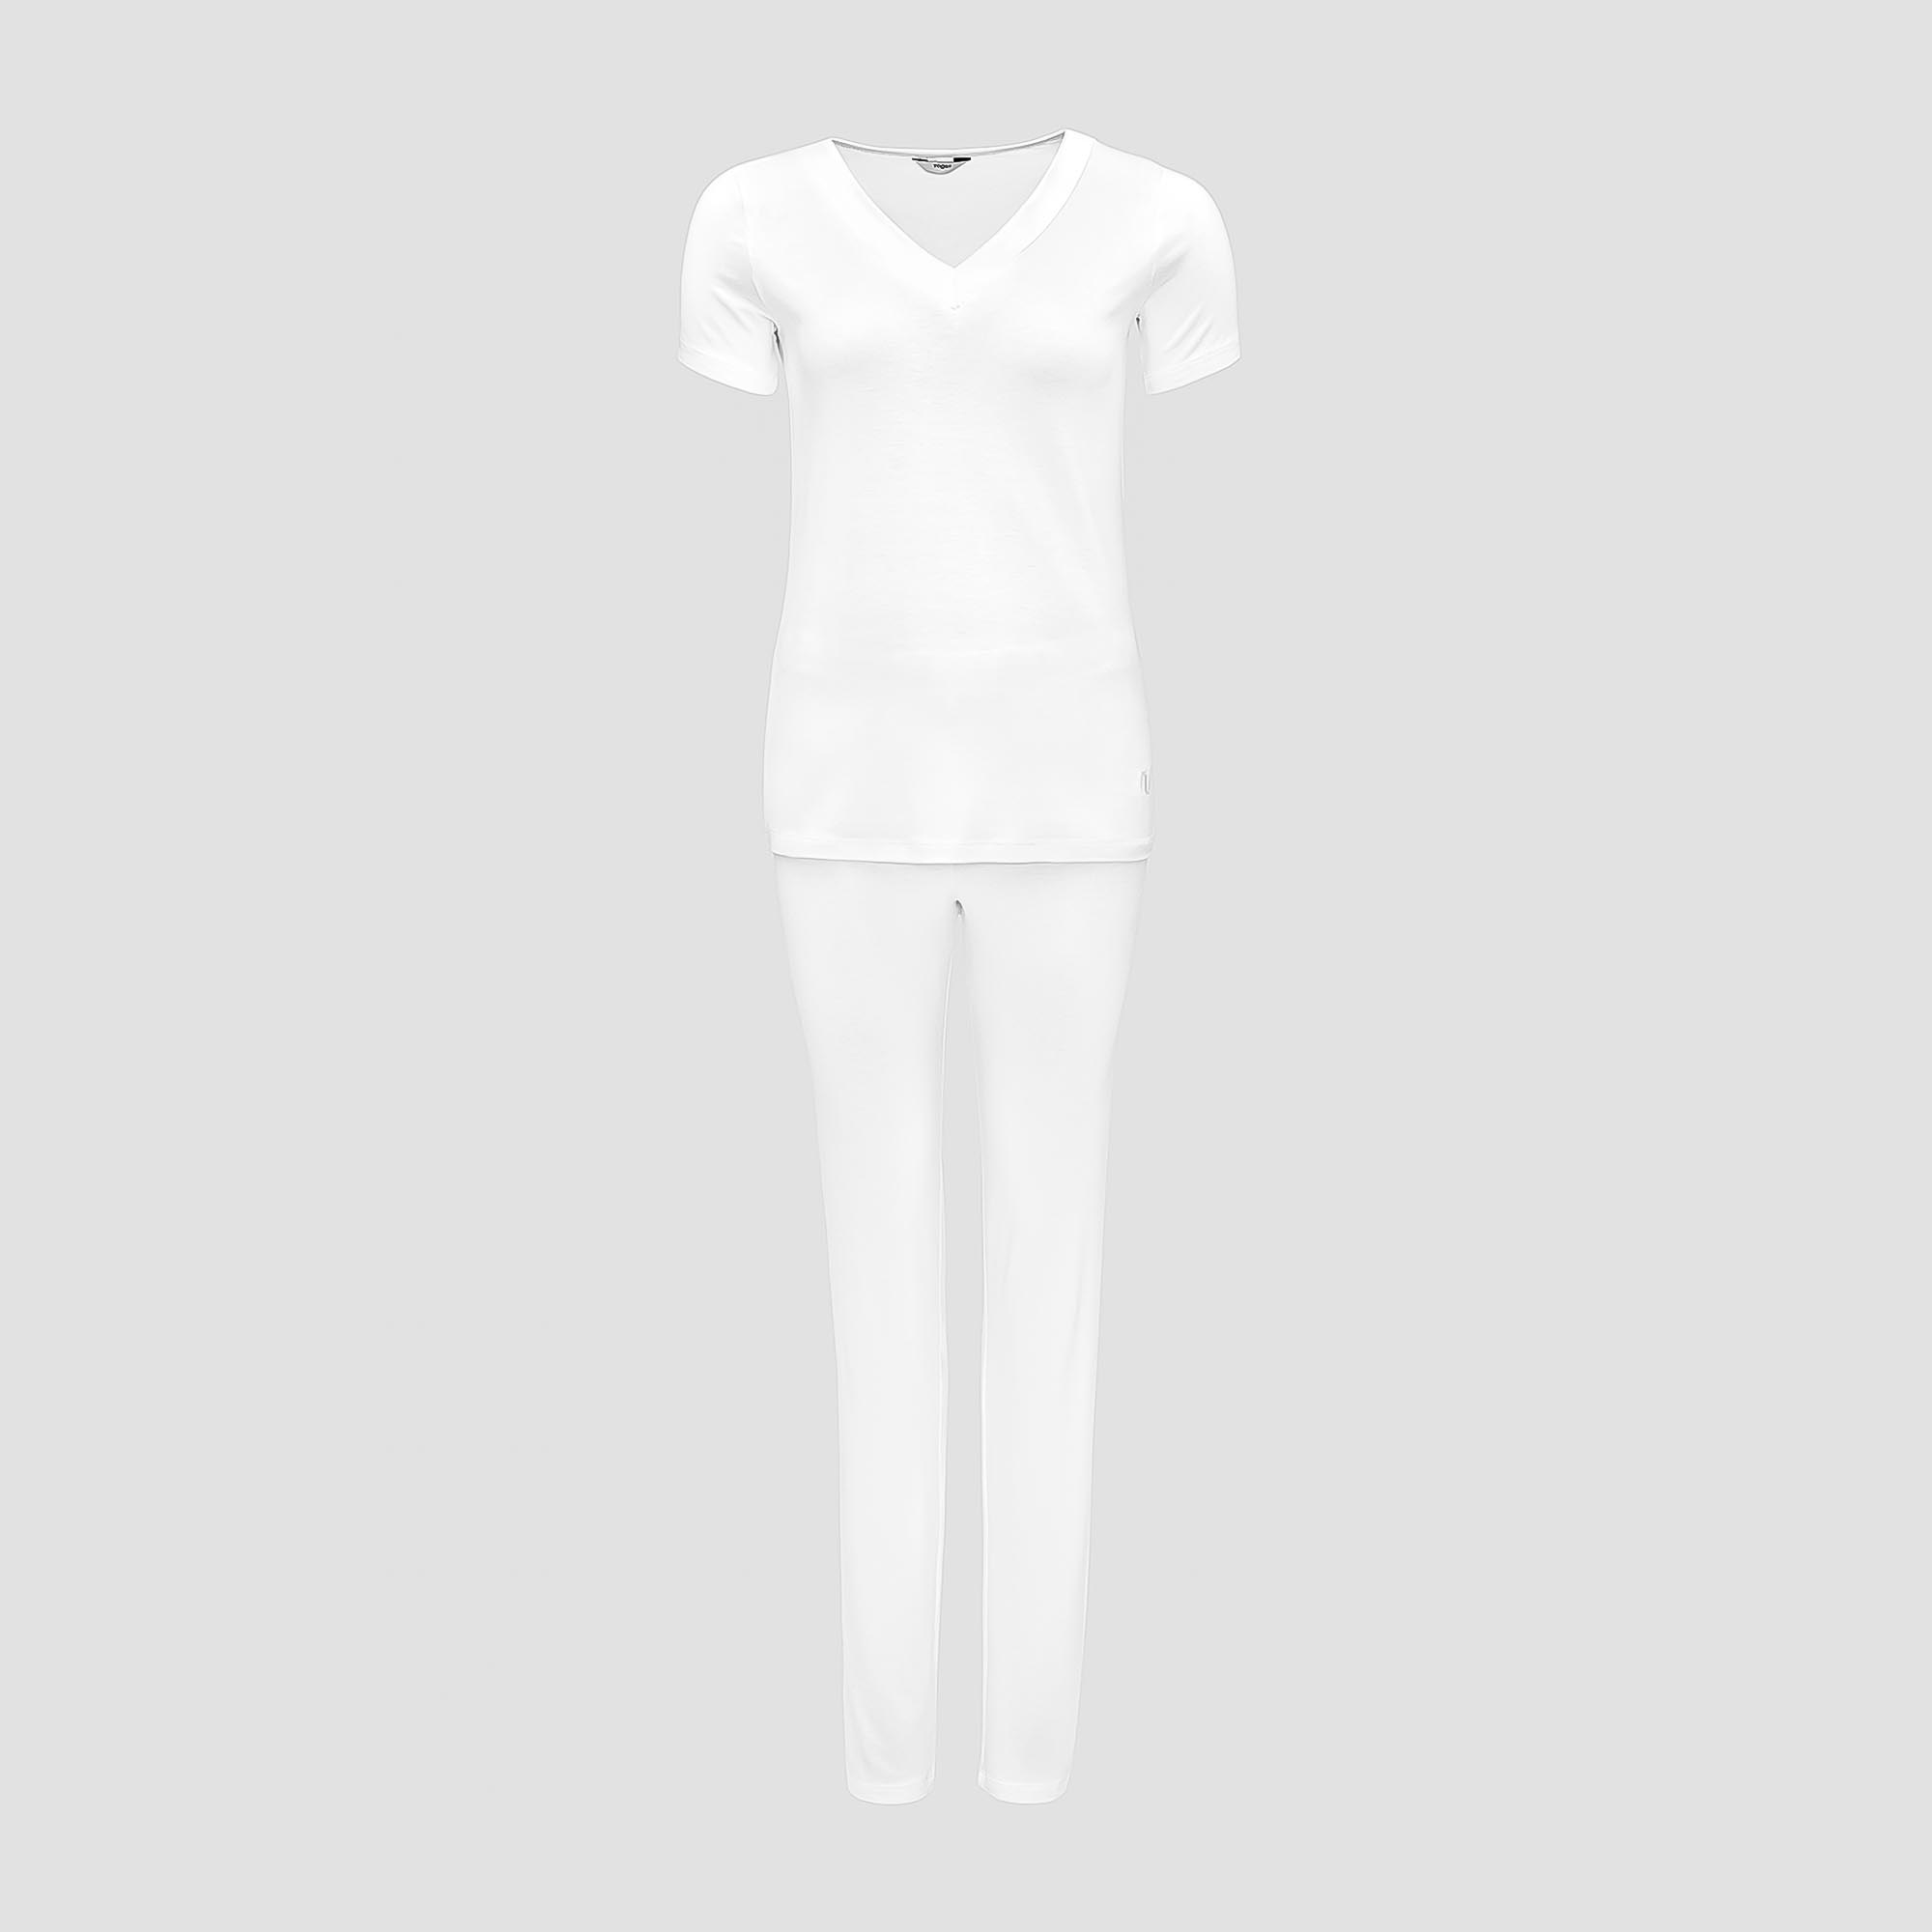 Пижама Togas Ингелла белая женская L(48) 2 предмета жен пижама с шортами инь янь белый р 54